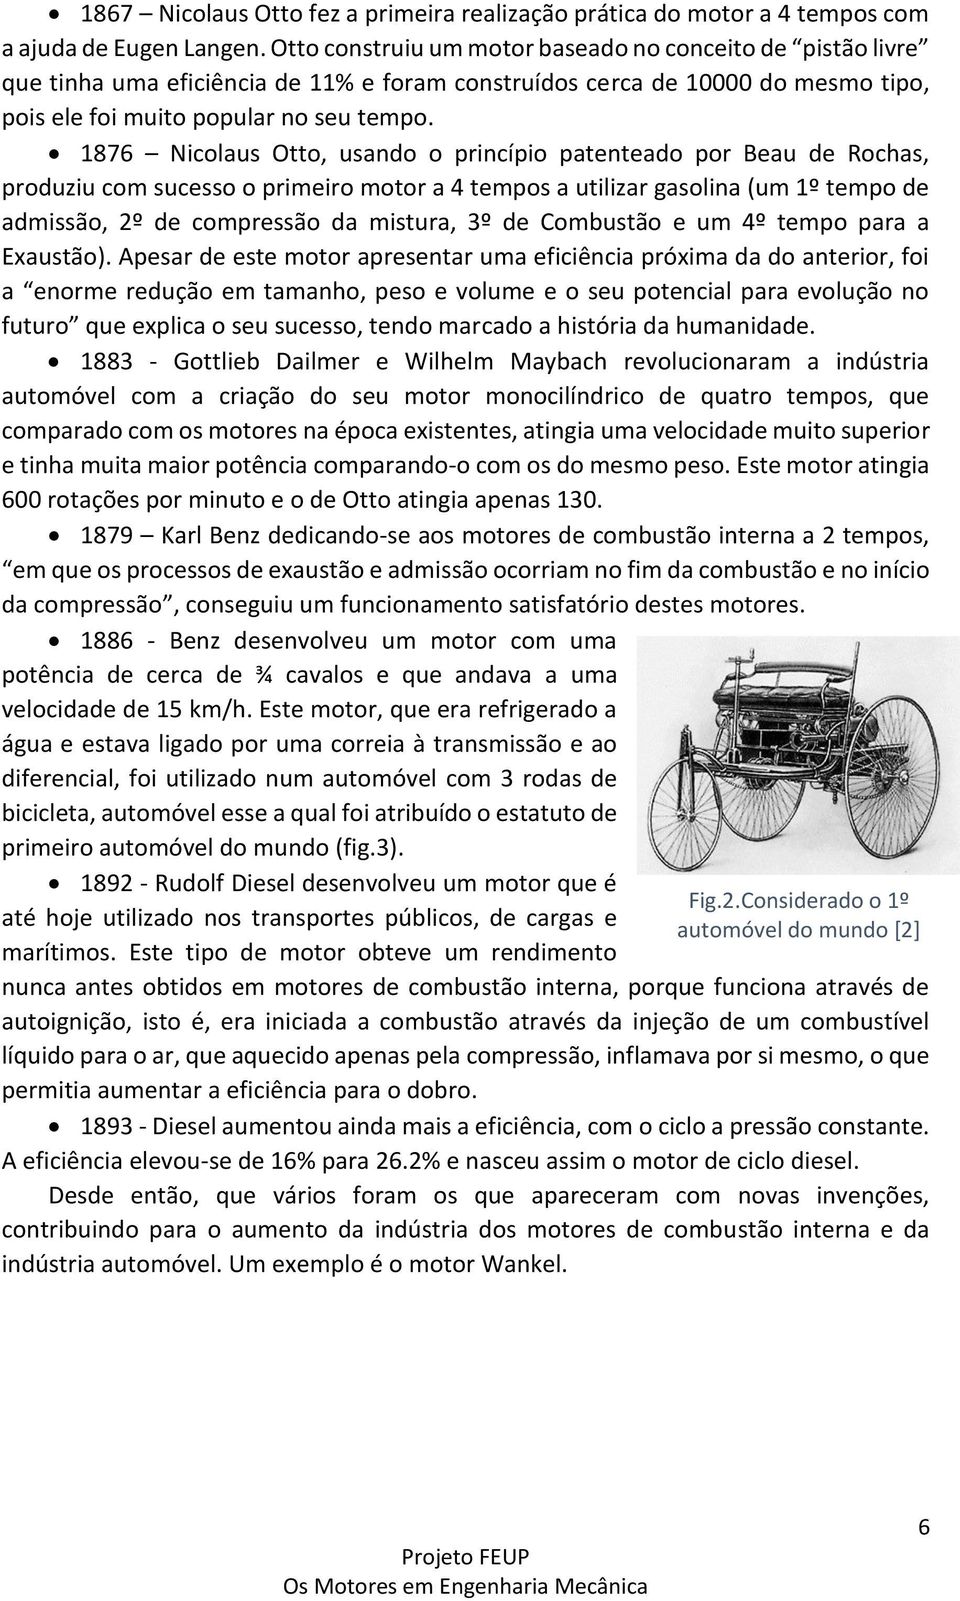 1876 Nicolaus Otto, usando o princípio patenteado por Beau de Rochas, produziu com sucesso o primeiro motor a 4 tempos a utilizar gasolina (um 1º tempo de admissão, 2º de compressão da mistura, 3º de